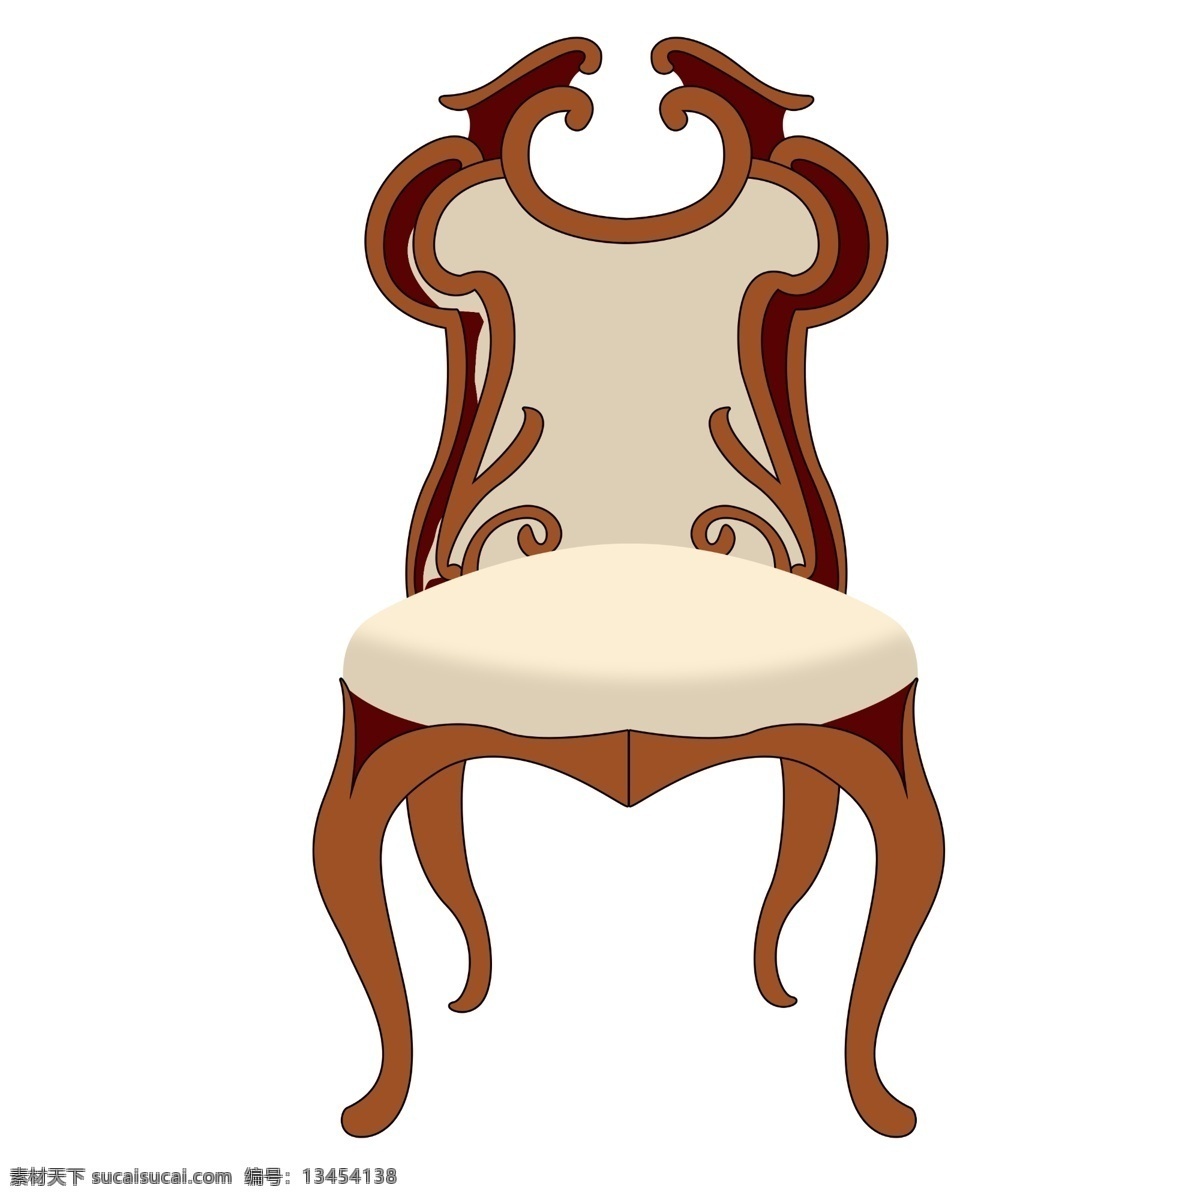 豪华 椅子 装饰 插画 豪华椅子 黄色的椅子 漂亮的椅子 创意椅子 立体椅子 卡通椅子 家具椅子